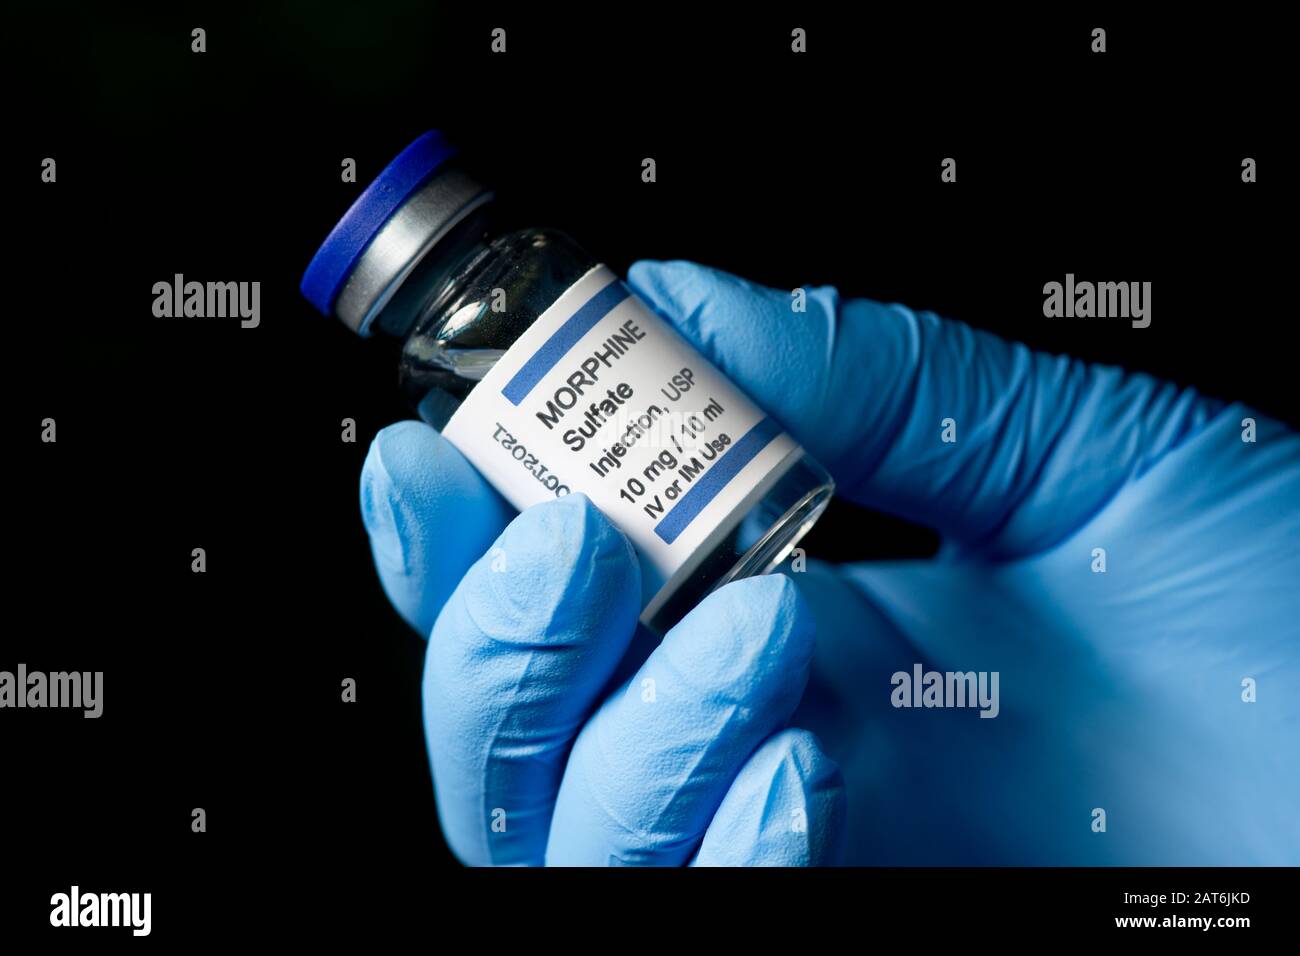 Morphin-Sulfat-Injektionsfläschchen, die von der Handschuhhand des Gesundheitsperformers mit dunklem Hintergrund gehalten werden. Stockfoto